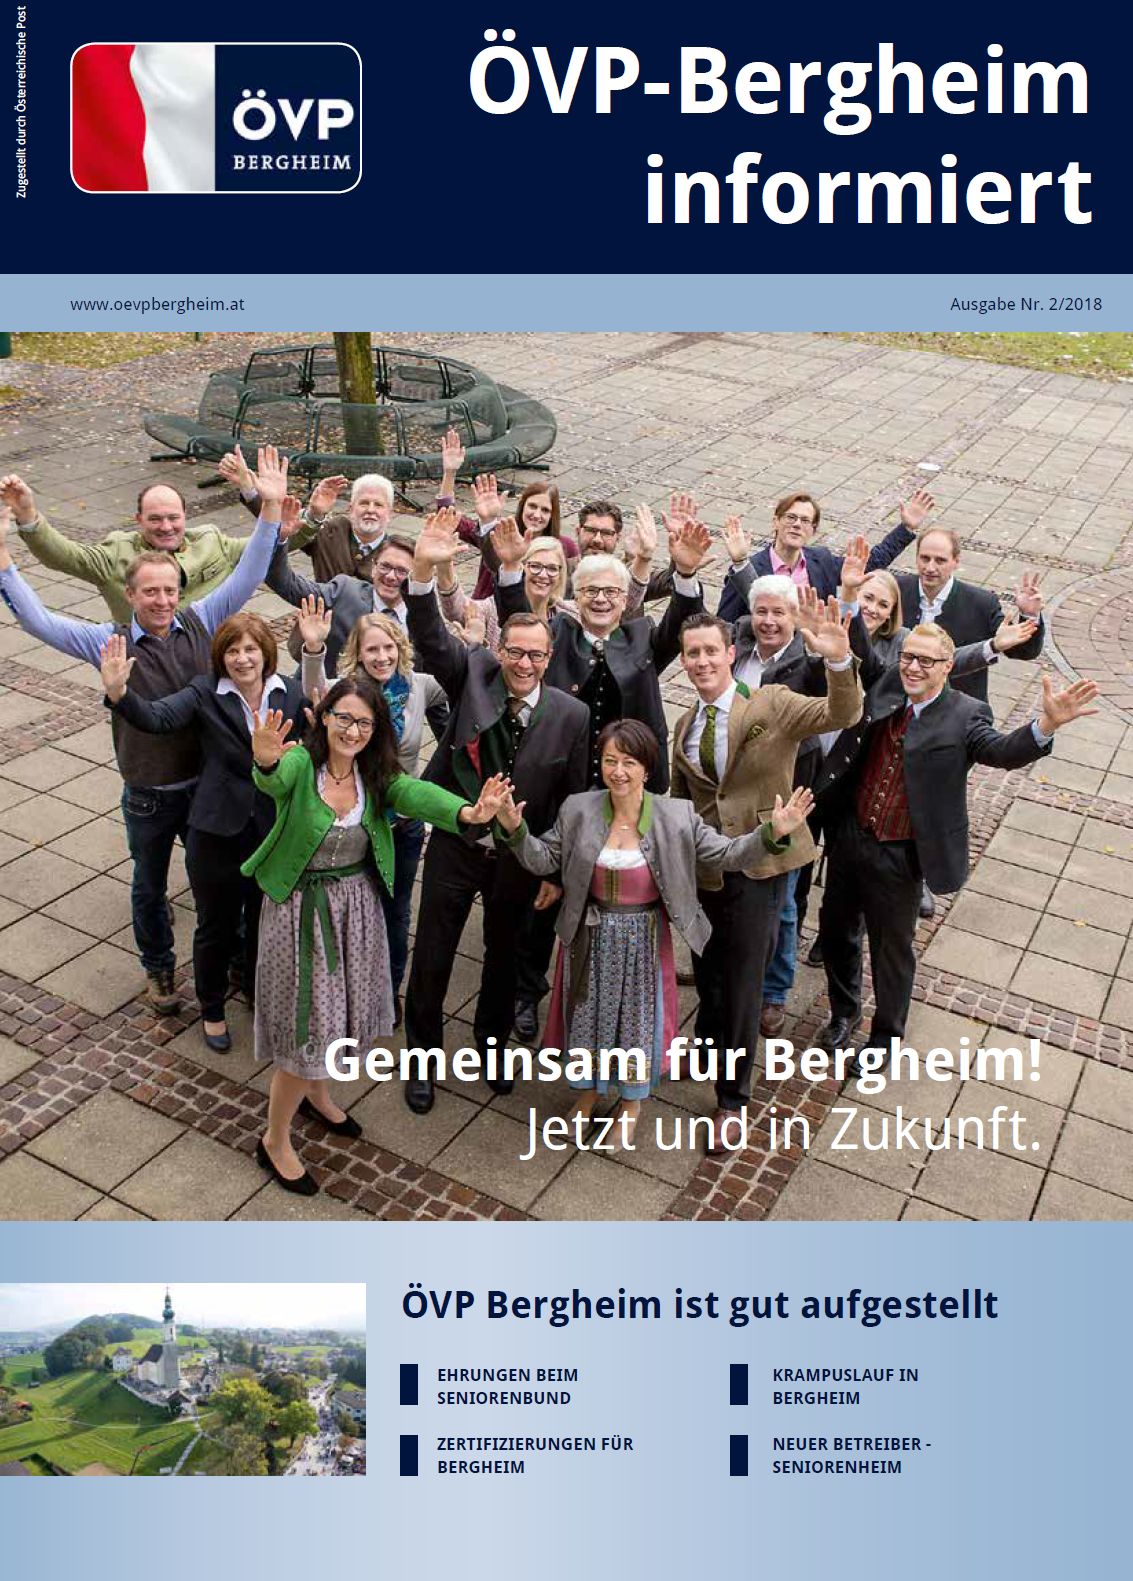 You are currently viewing Neue Zeitung der ÖVP Bergheim online!